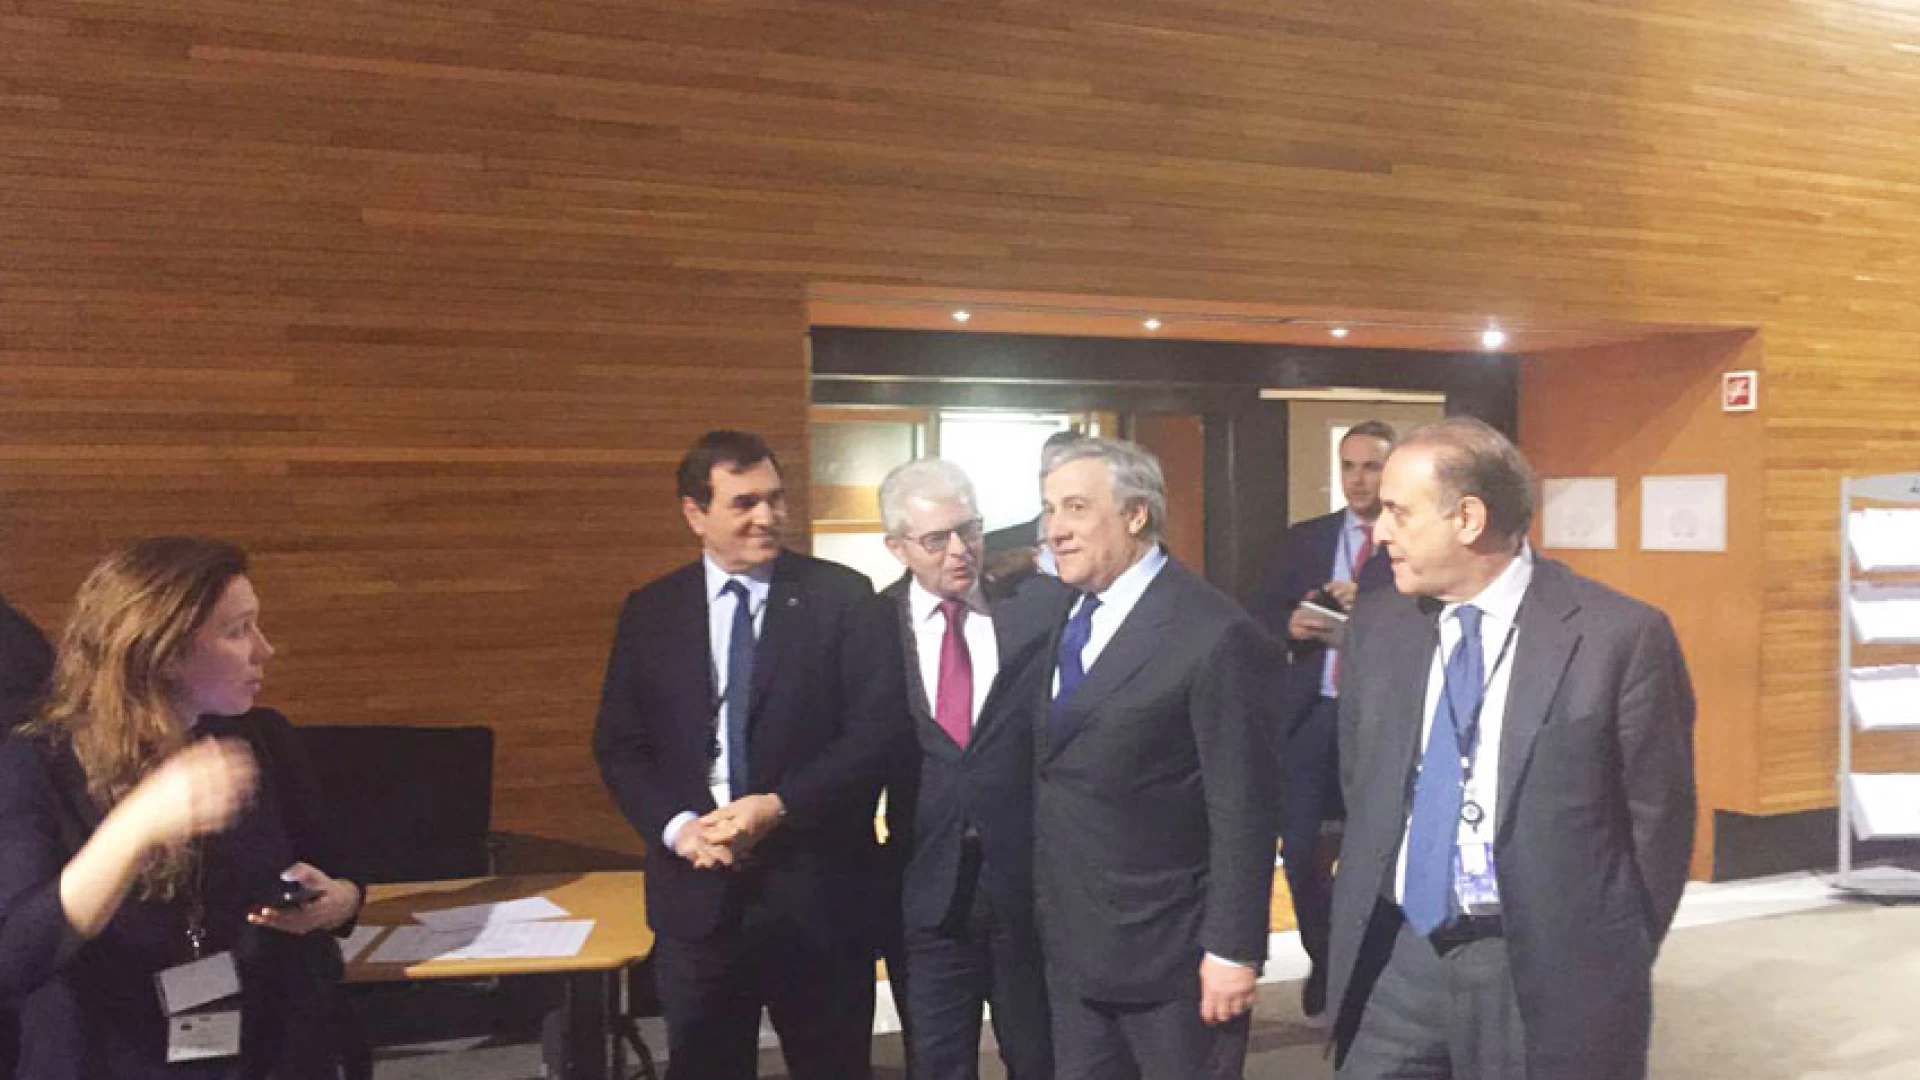 Parlamento Europeo, Antonio Tajani eletto presidente. Patriciello: “Grande felicità, con lui Unione Europea e Italia più forti”.